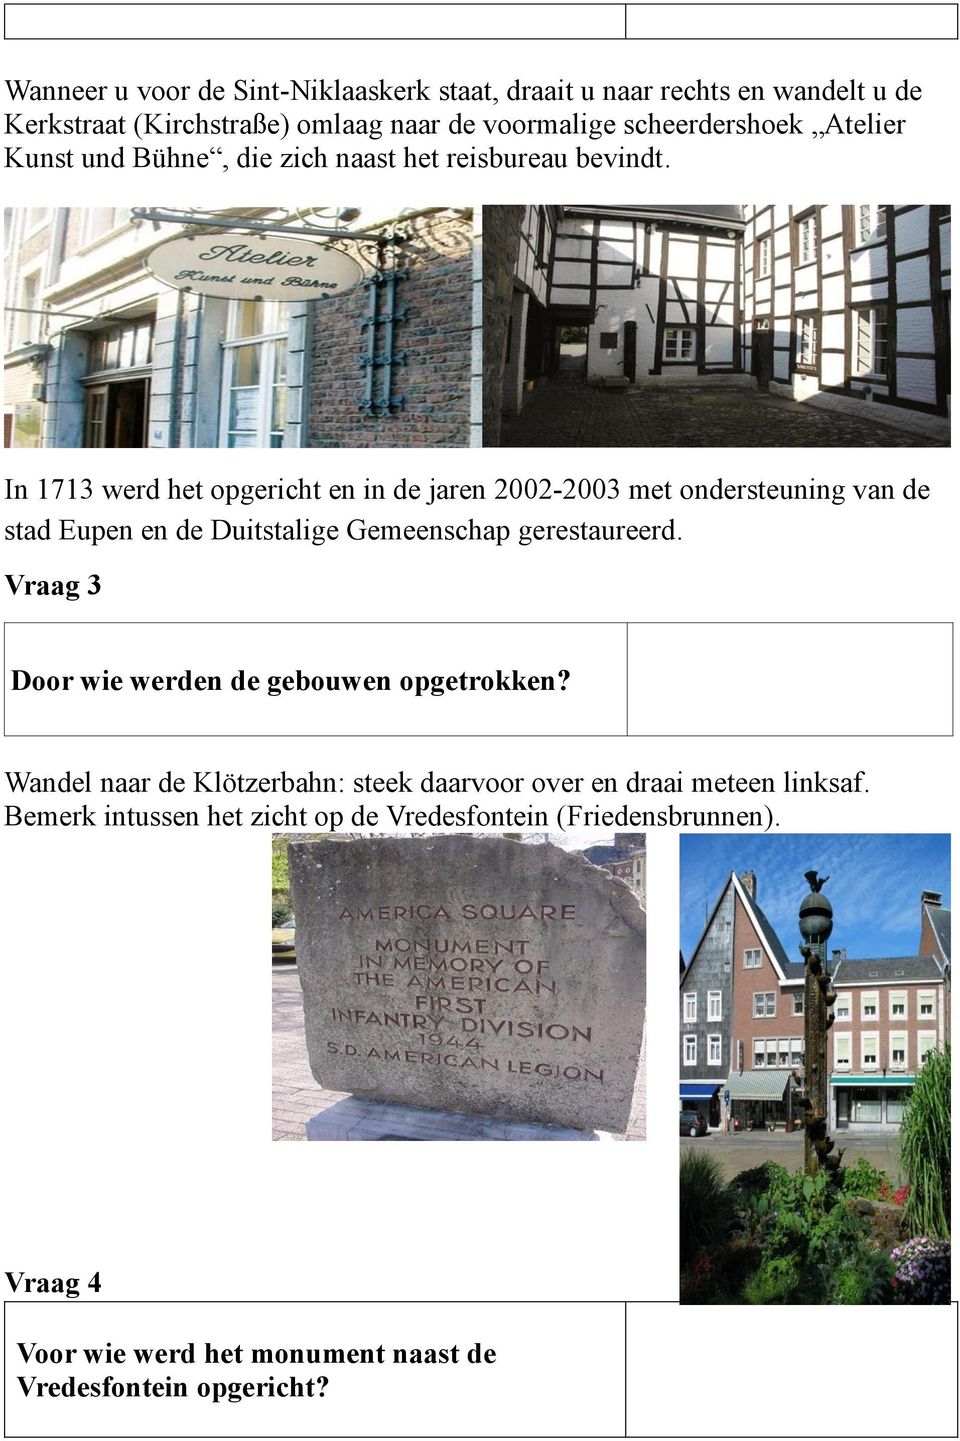 In 1713 werd het opgericht en in de jaren 2002-2003 met ondersteuning van de stad Eupen en de Duitstalige Gemeenschap gerestaureerd.